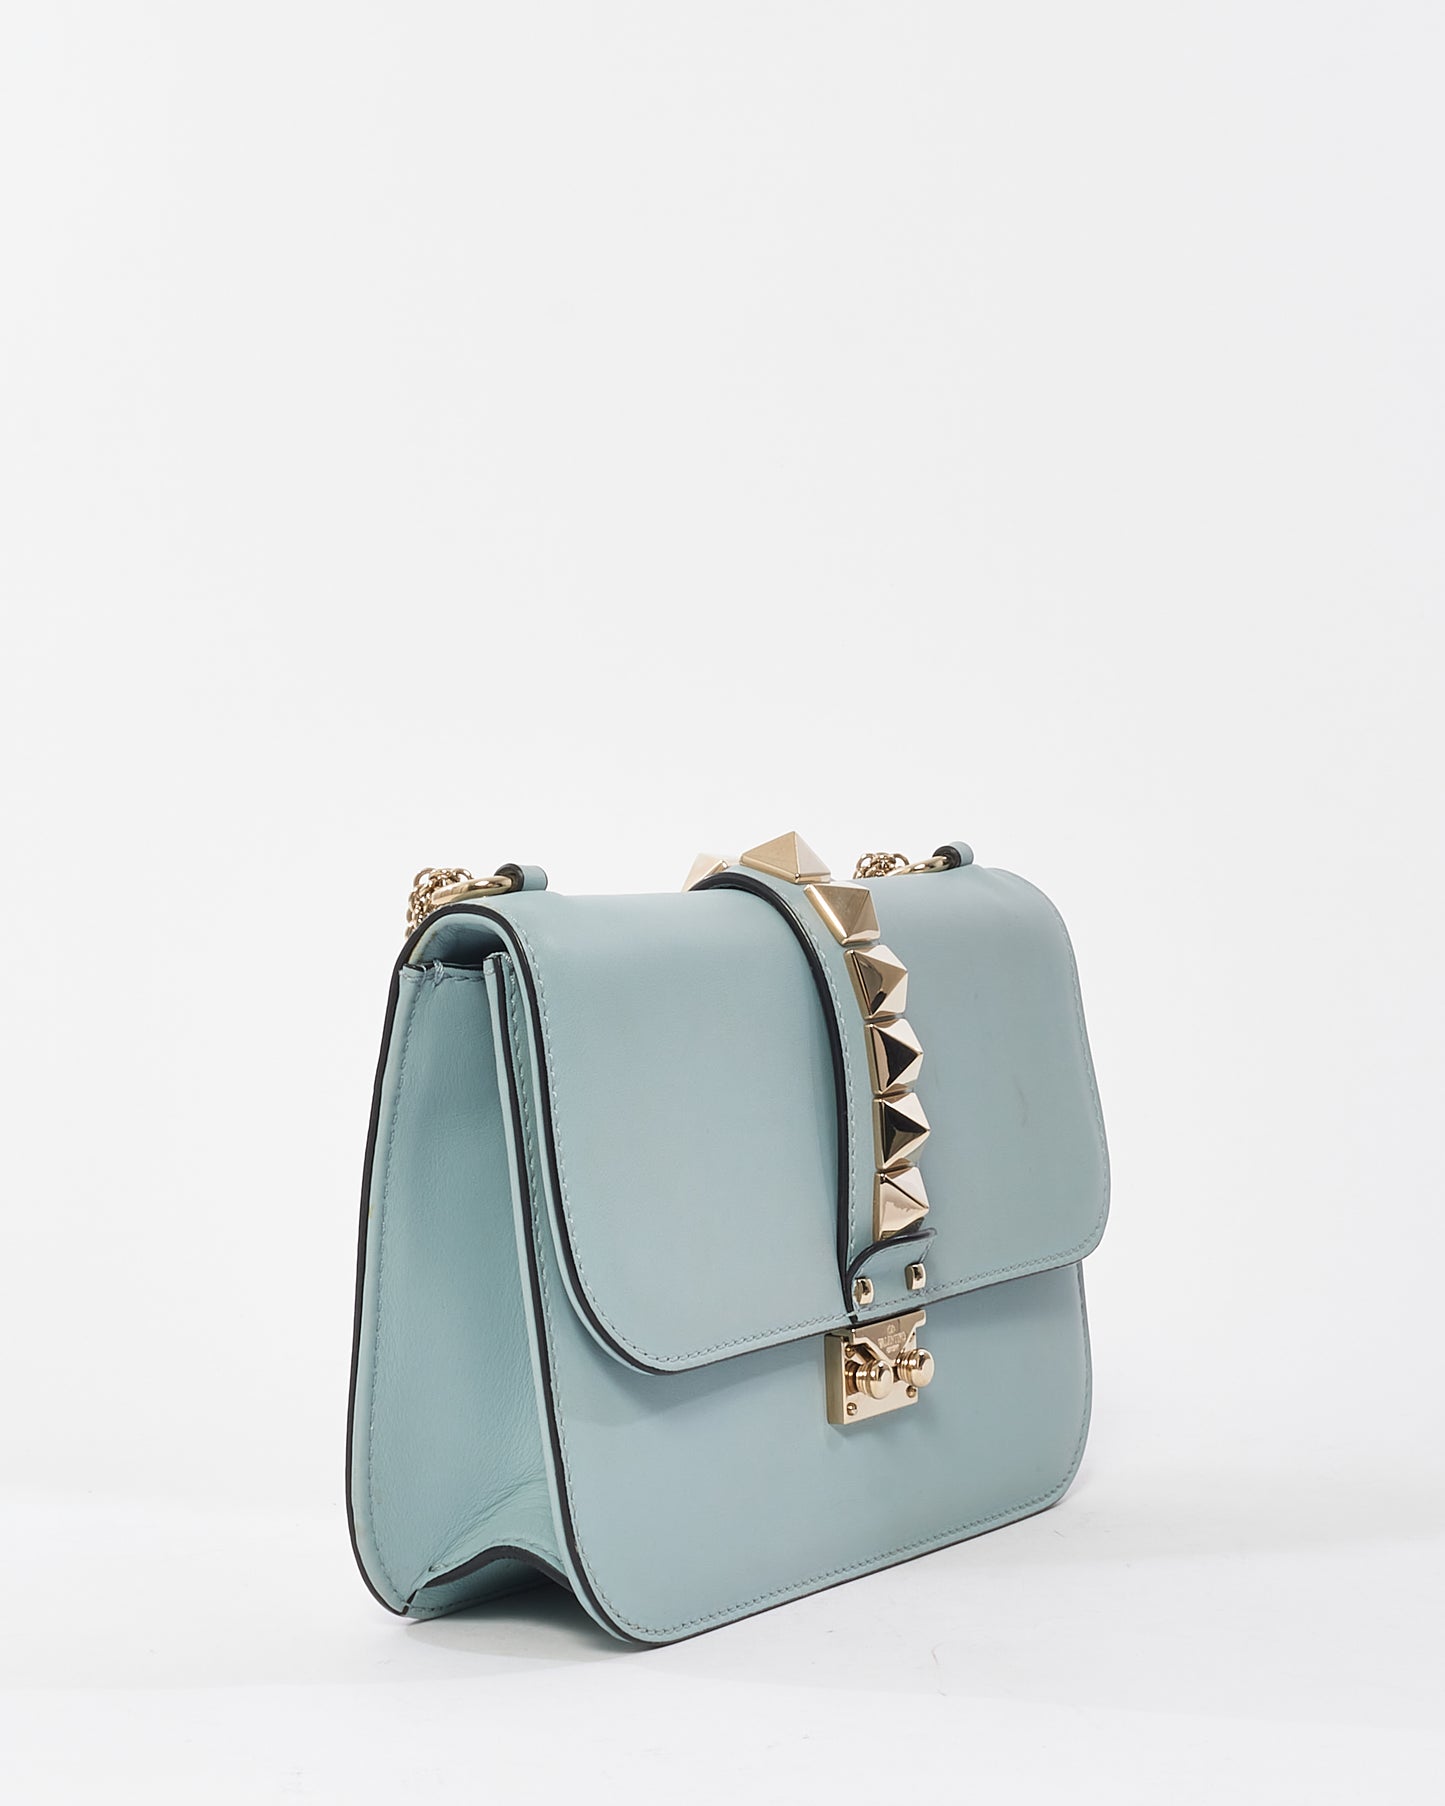 Valentino Pale Blue Leather Glam Rock Studded Shoulder Bag